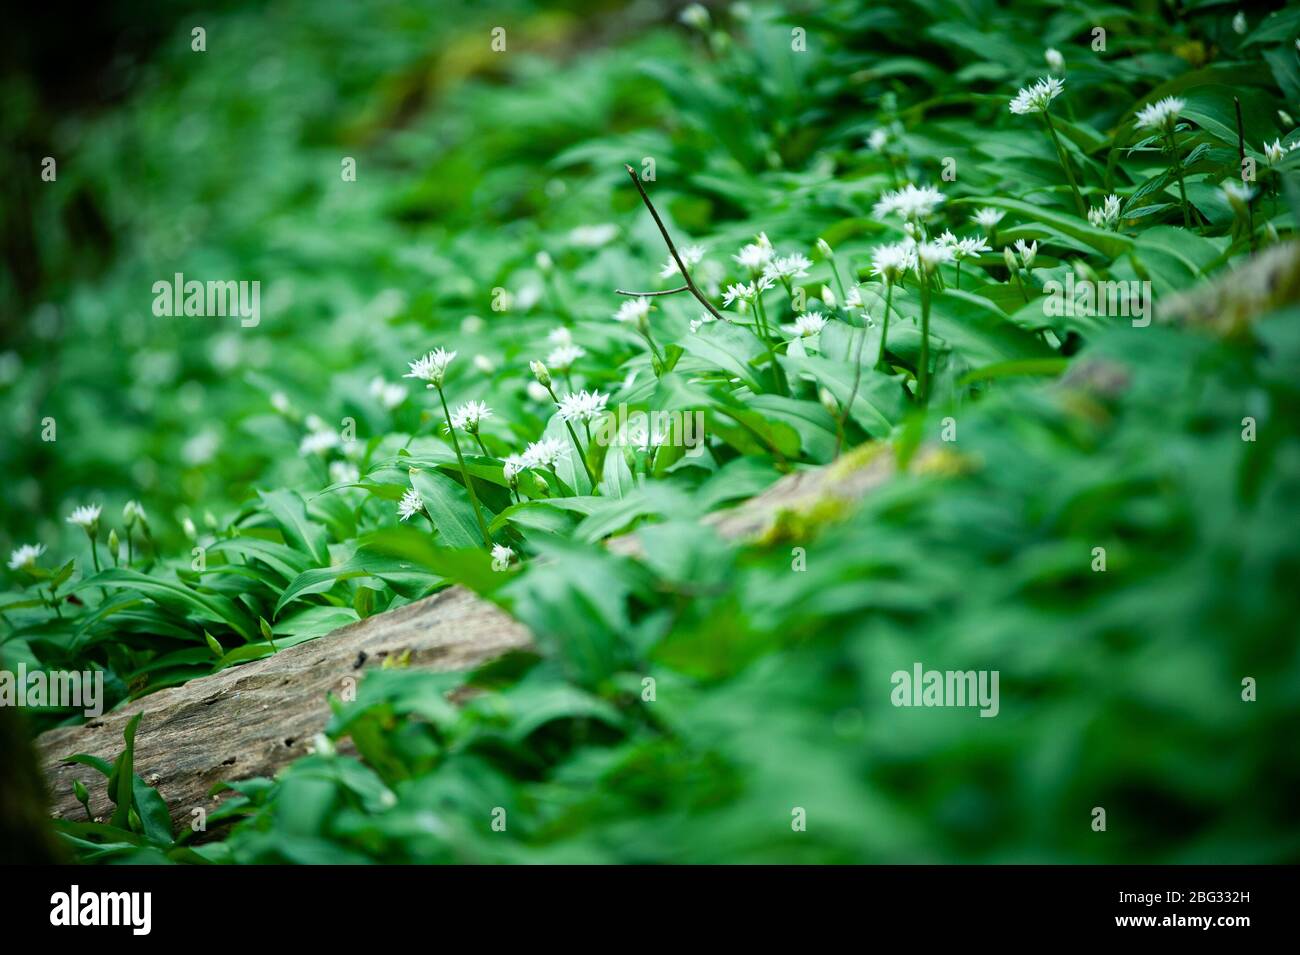 Frühling im europäischen Wald. Allium ursinum bekannt es Bärlauch, Ramsons, Buckrams, breitblättrigen Knoblauch, Knoblauch, Bärlauch oder Bärlauch. Stockfoto